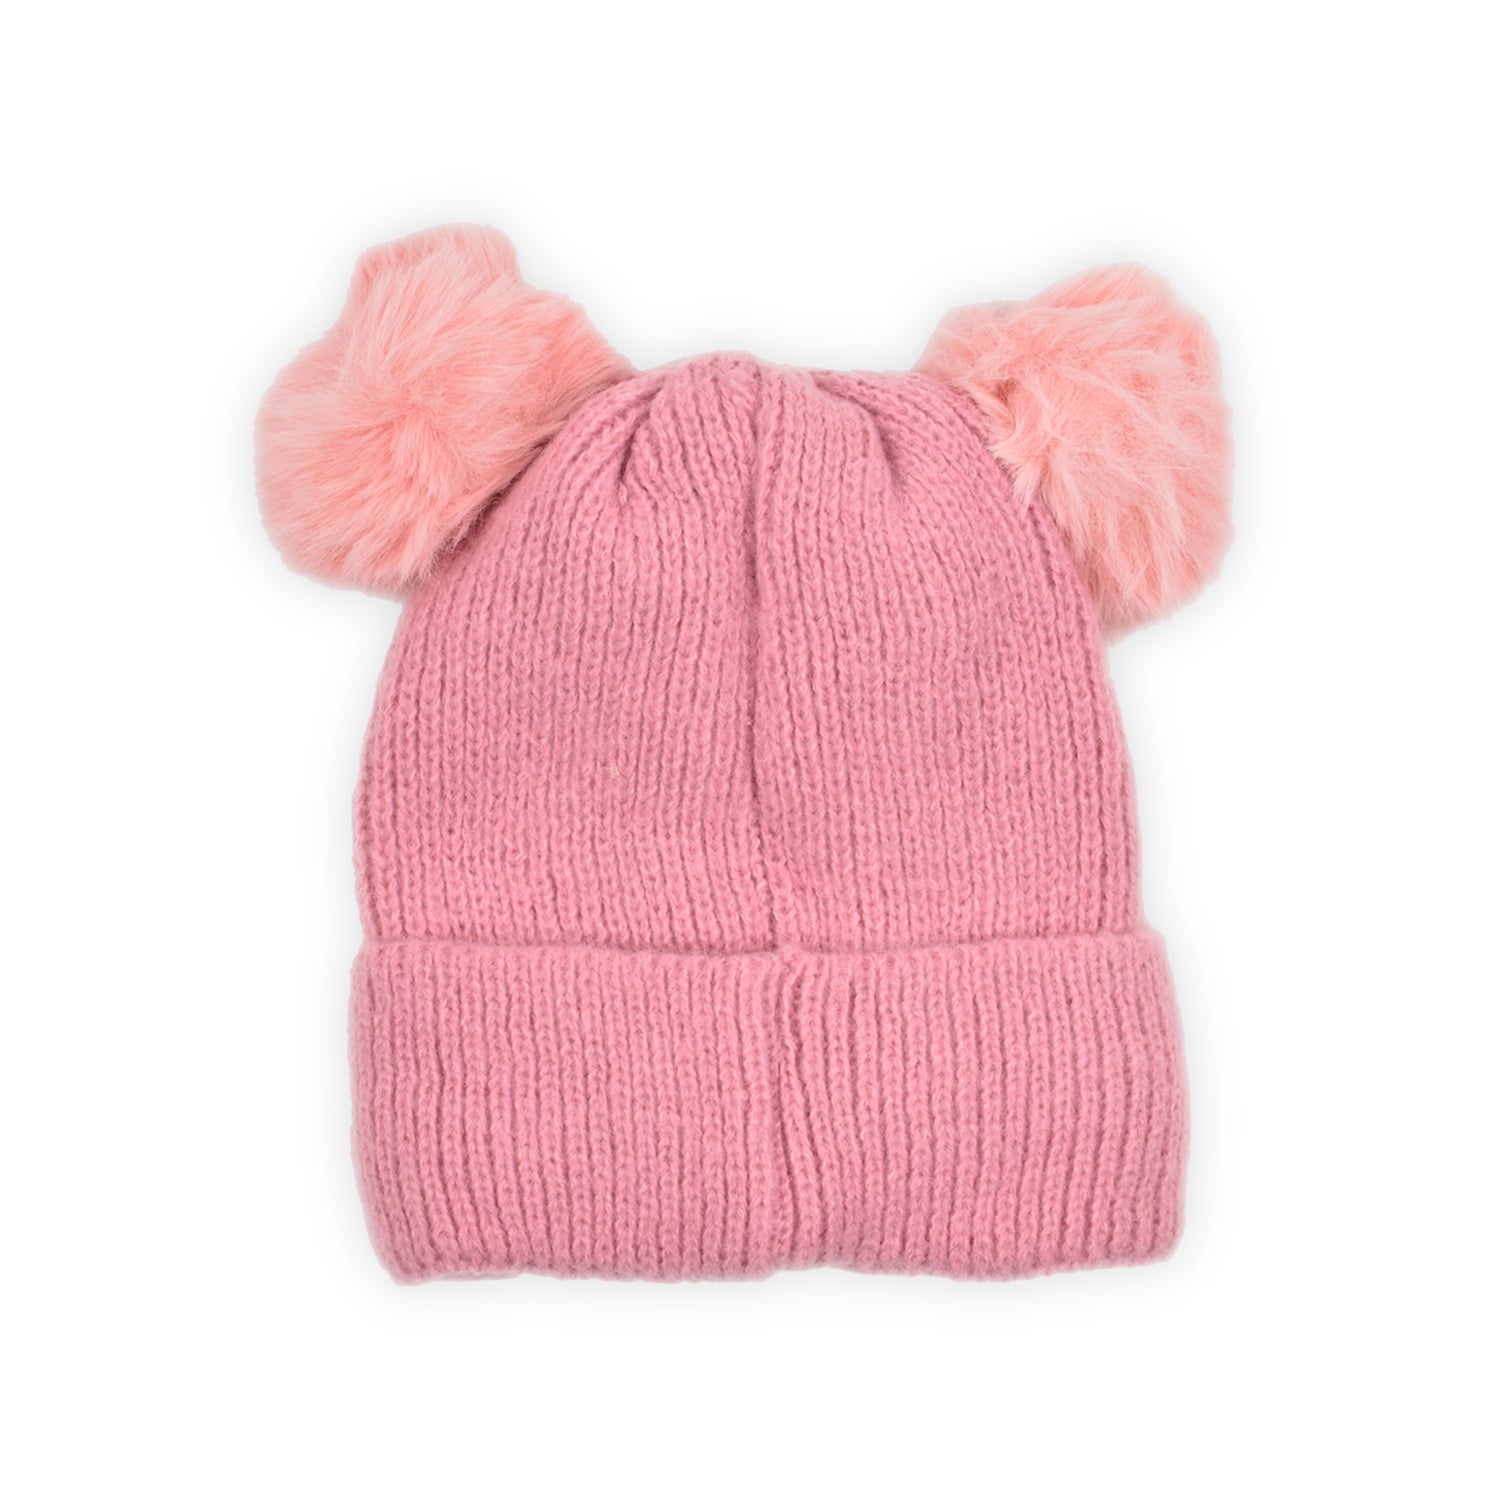 Baby Unisex Woolen Caps | Pink & Grey | Pack Of 2